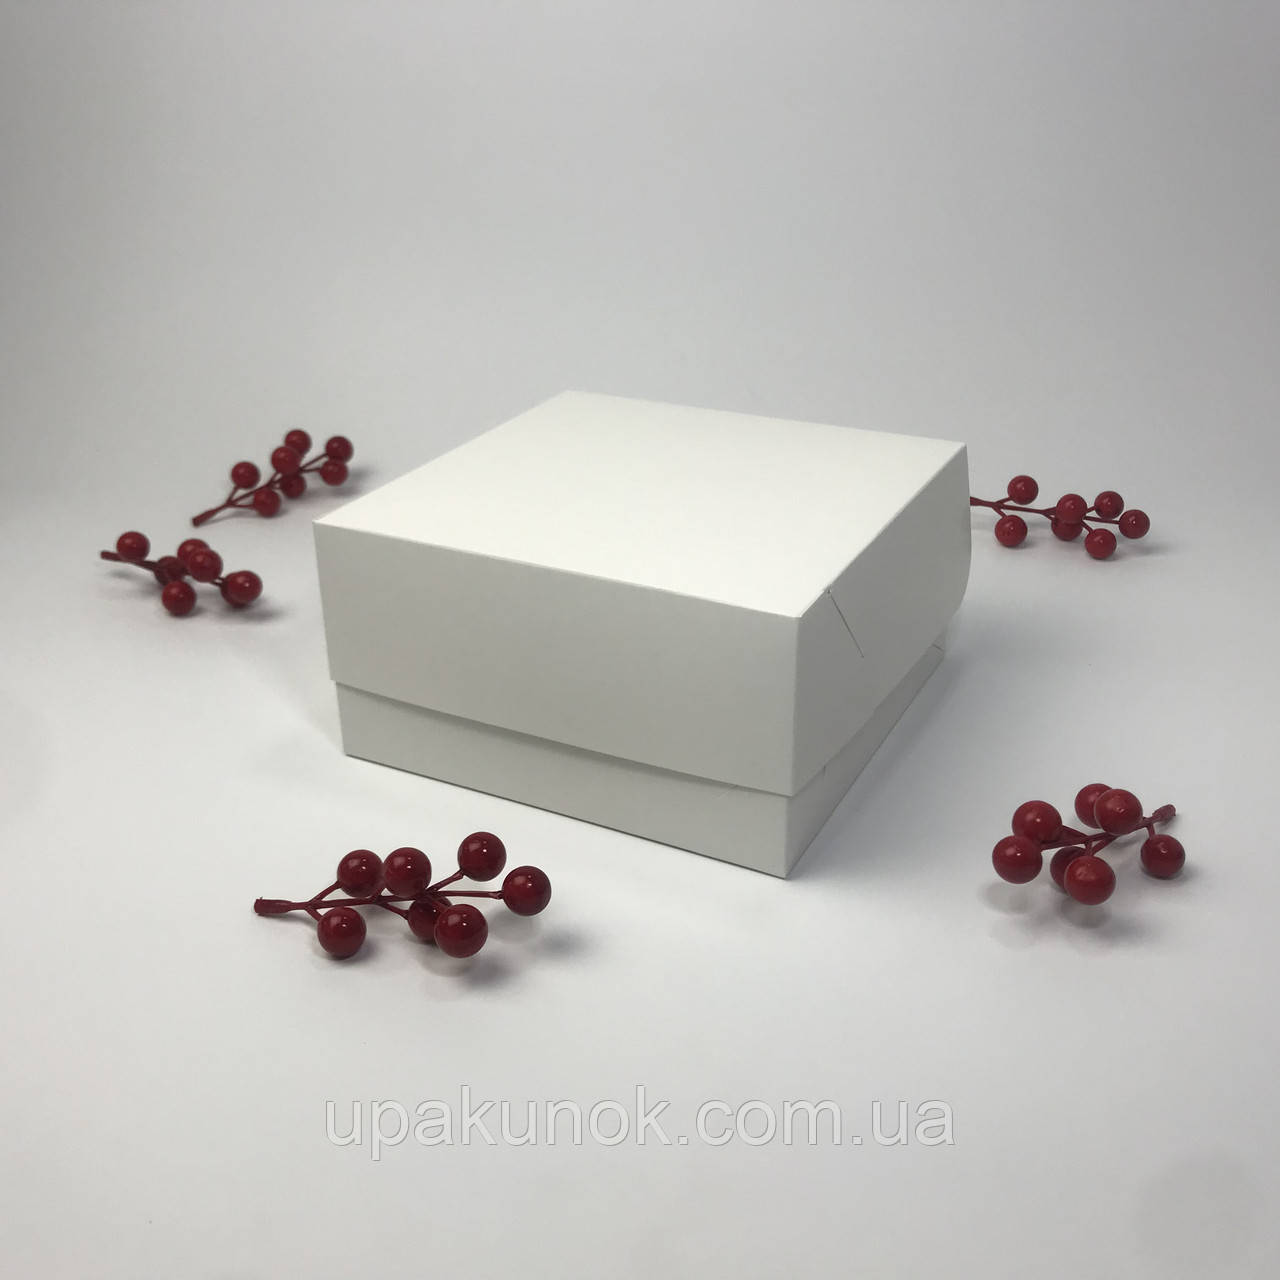 Коробка для капкейків (4 шт), 170*170*90 мм, без вікна, біла